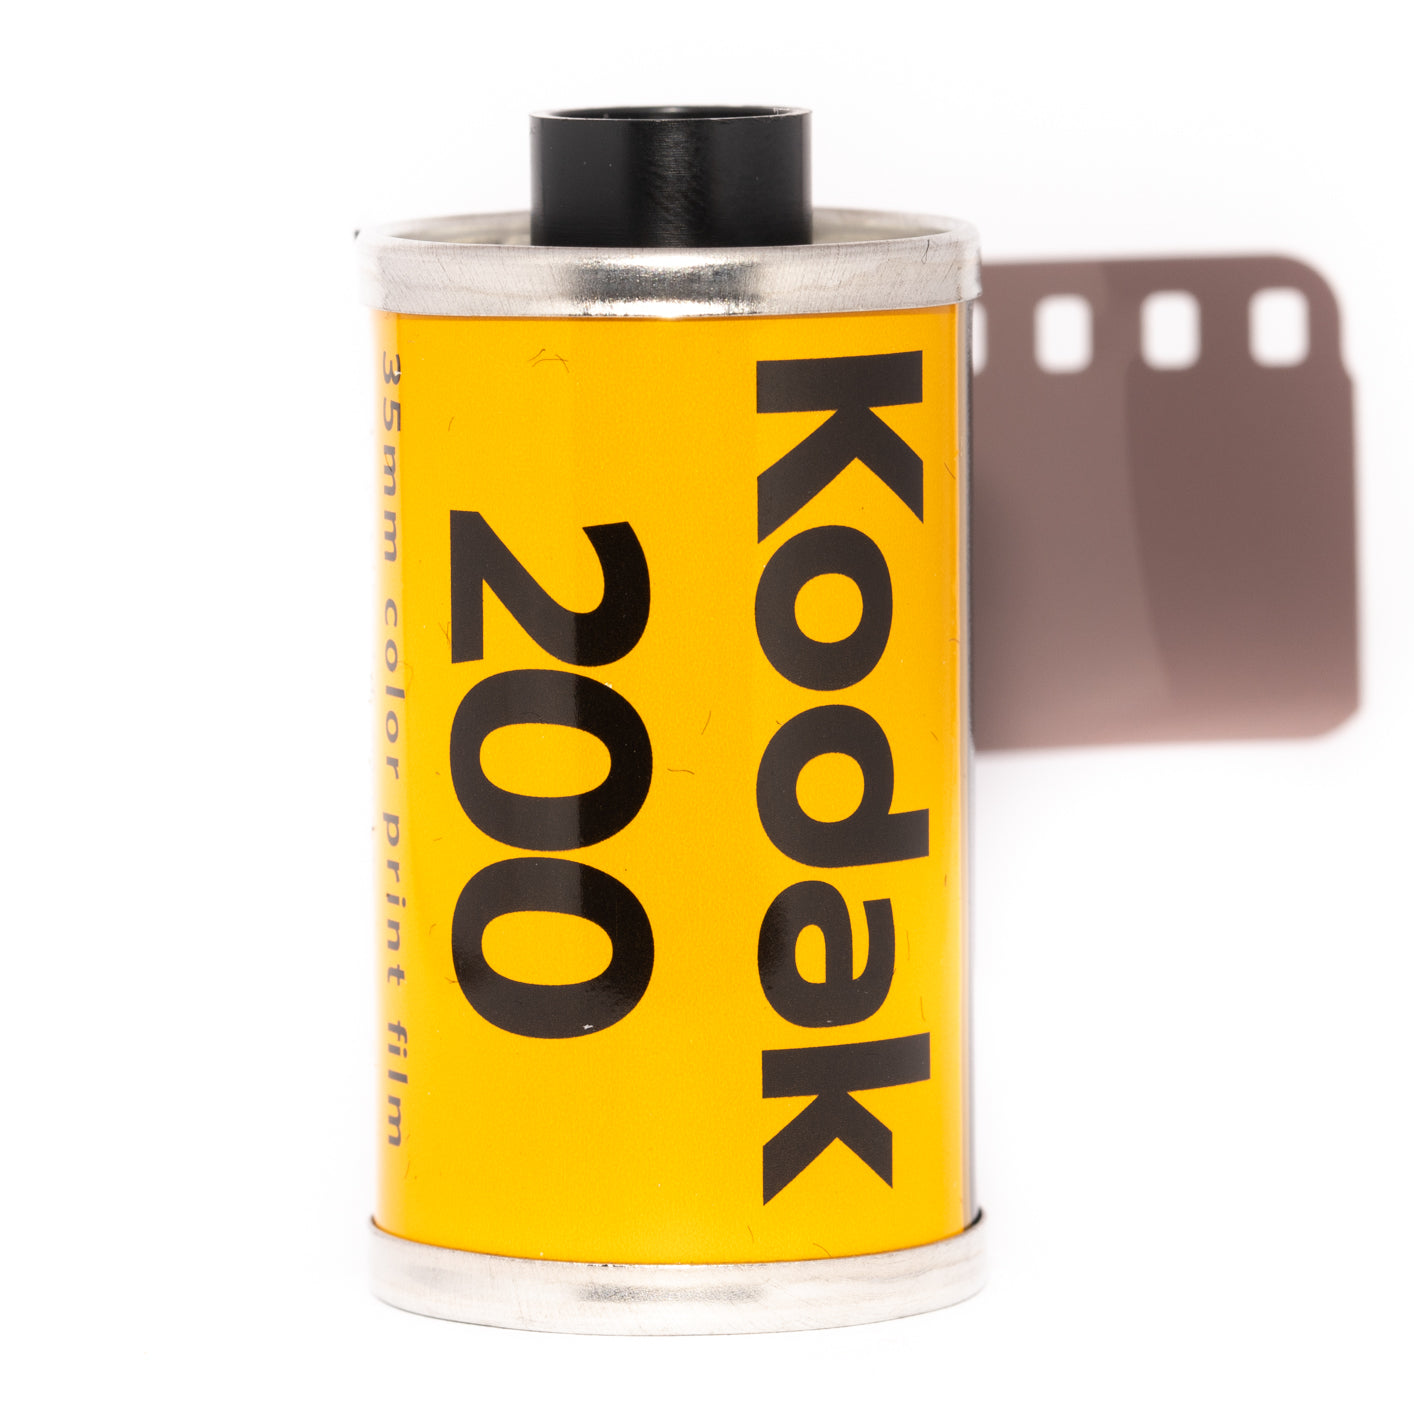 Kodak Gold 200 - 35mm, 24 exp. – Popho Camera Co.